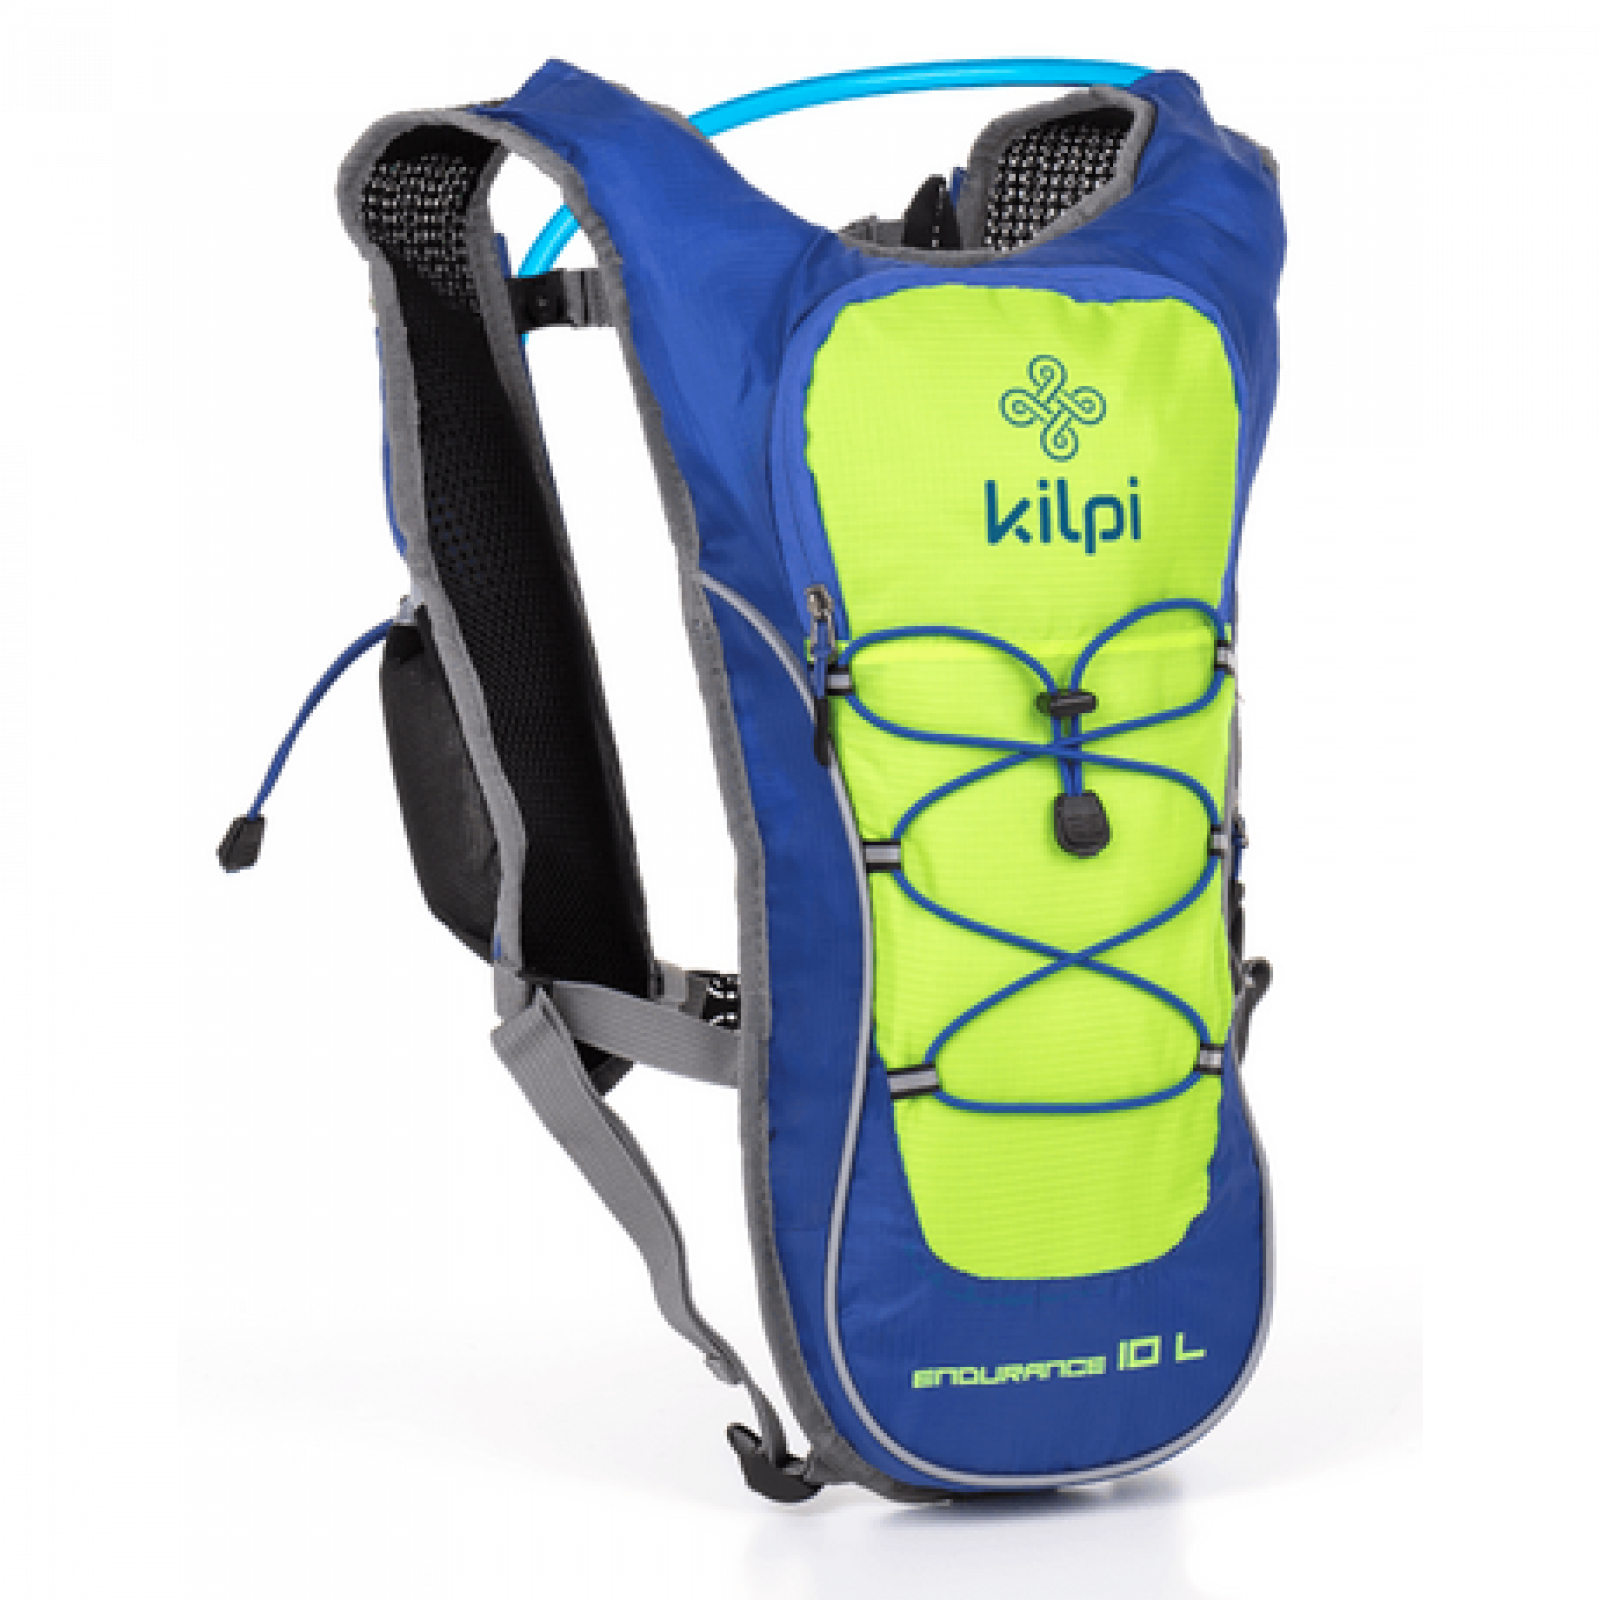 Рюкзак Kilpi Endurance на 10 литров с резервуаром для воды на 1,5 л